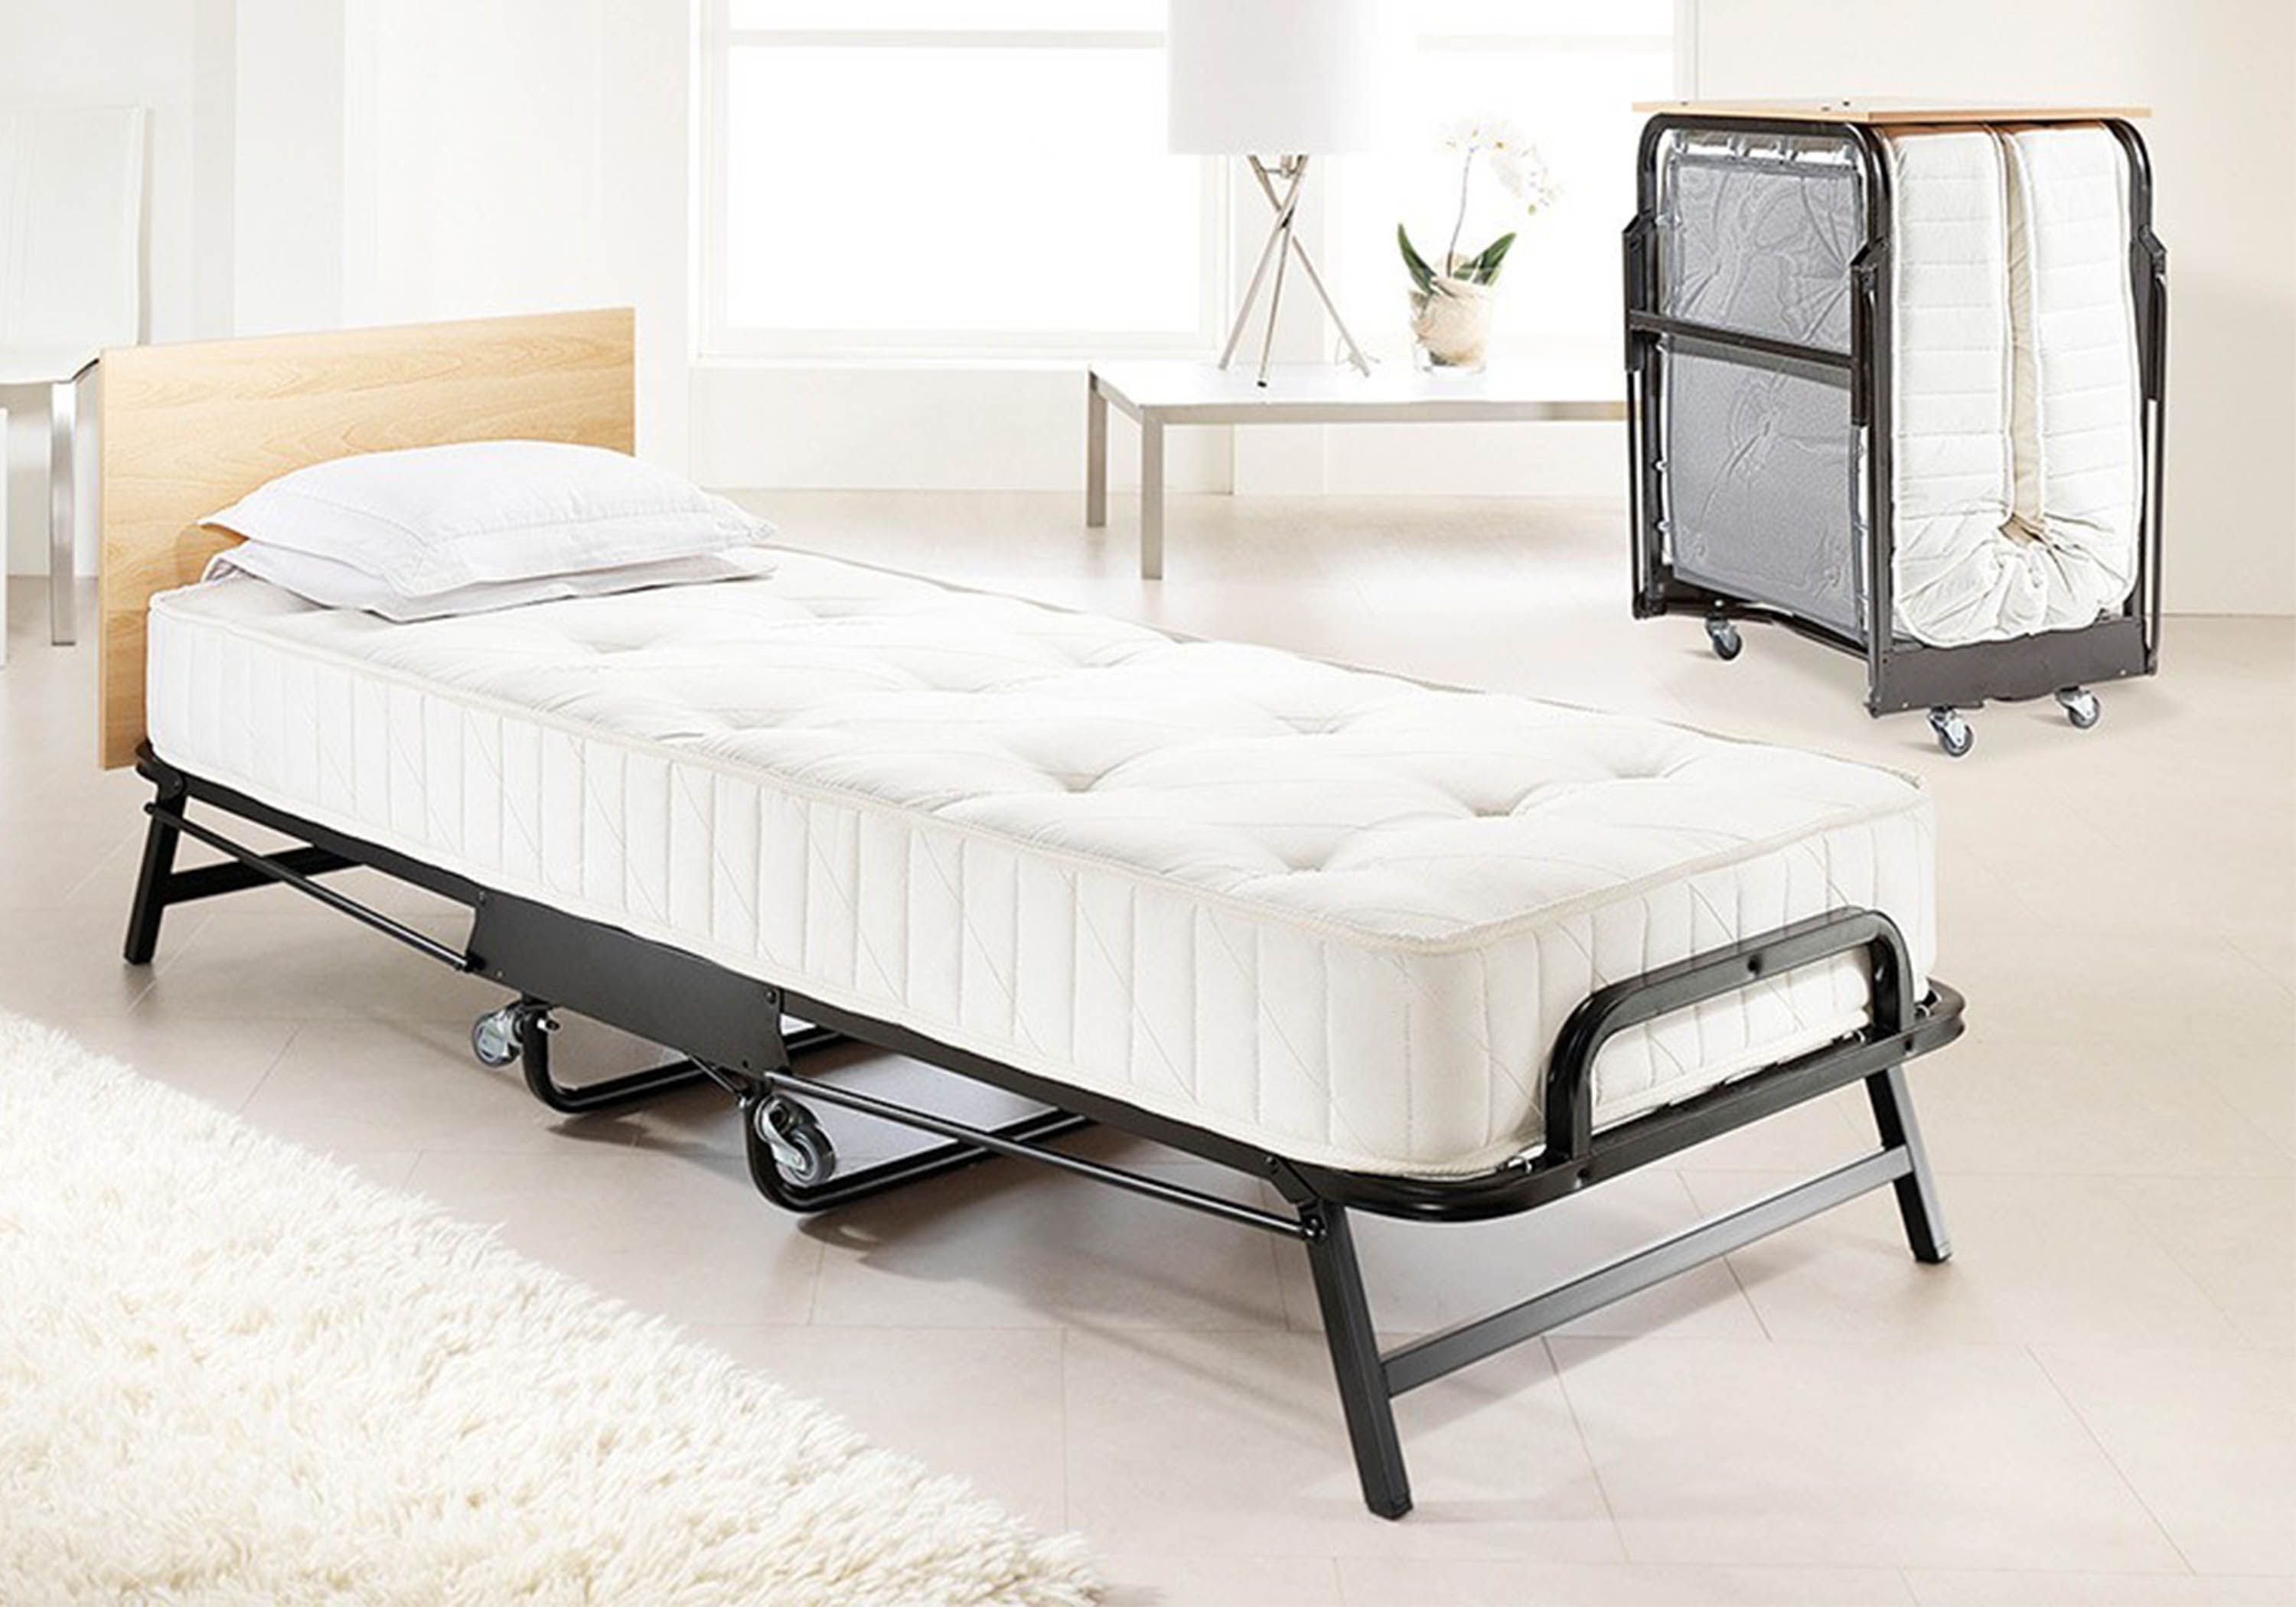 cot size fold up guest mattress